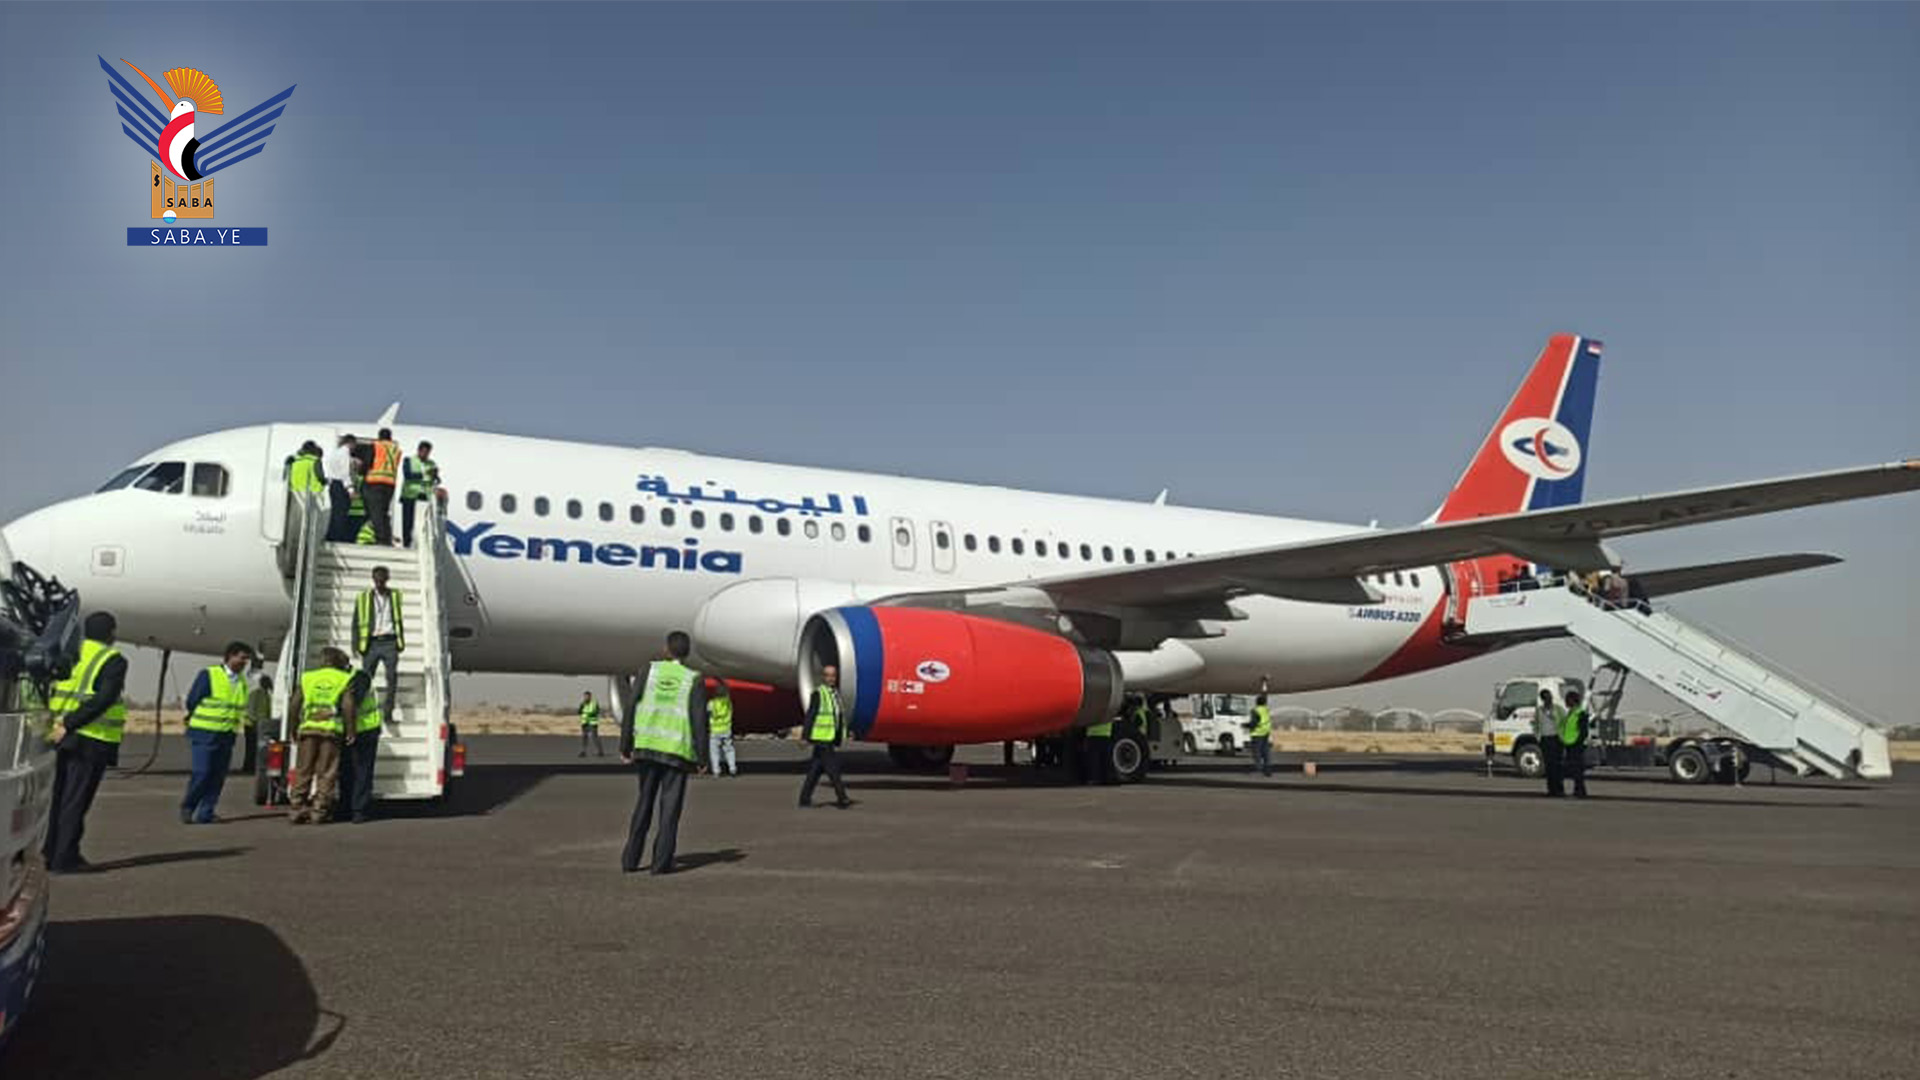   Départ du huitième vol de l'aéroport international de Sana'a vers la Jordanie